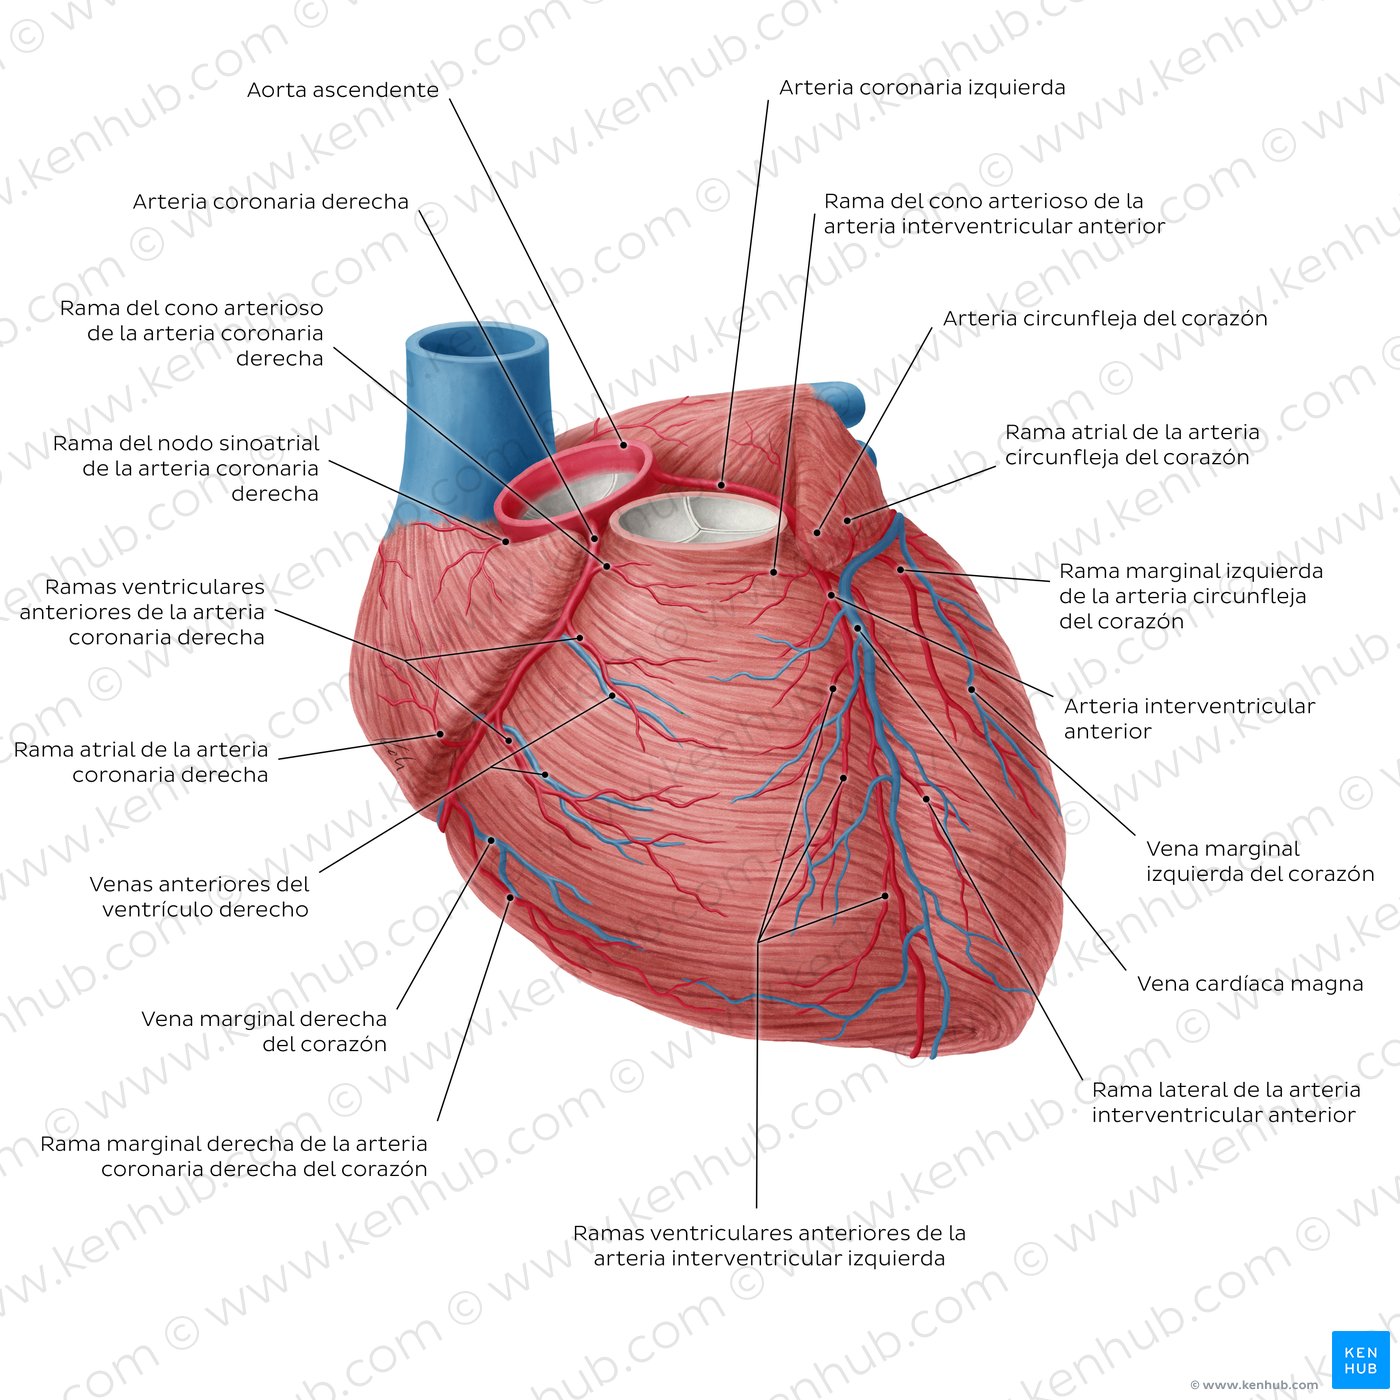 Arterias coronarias y venas cardíacas